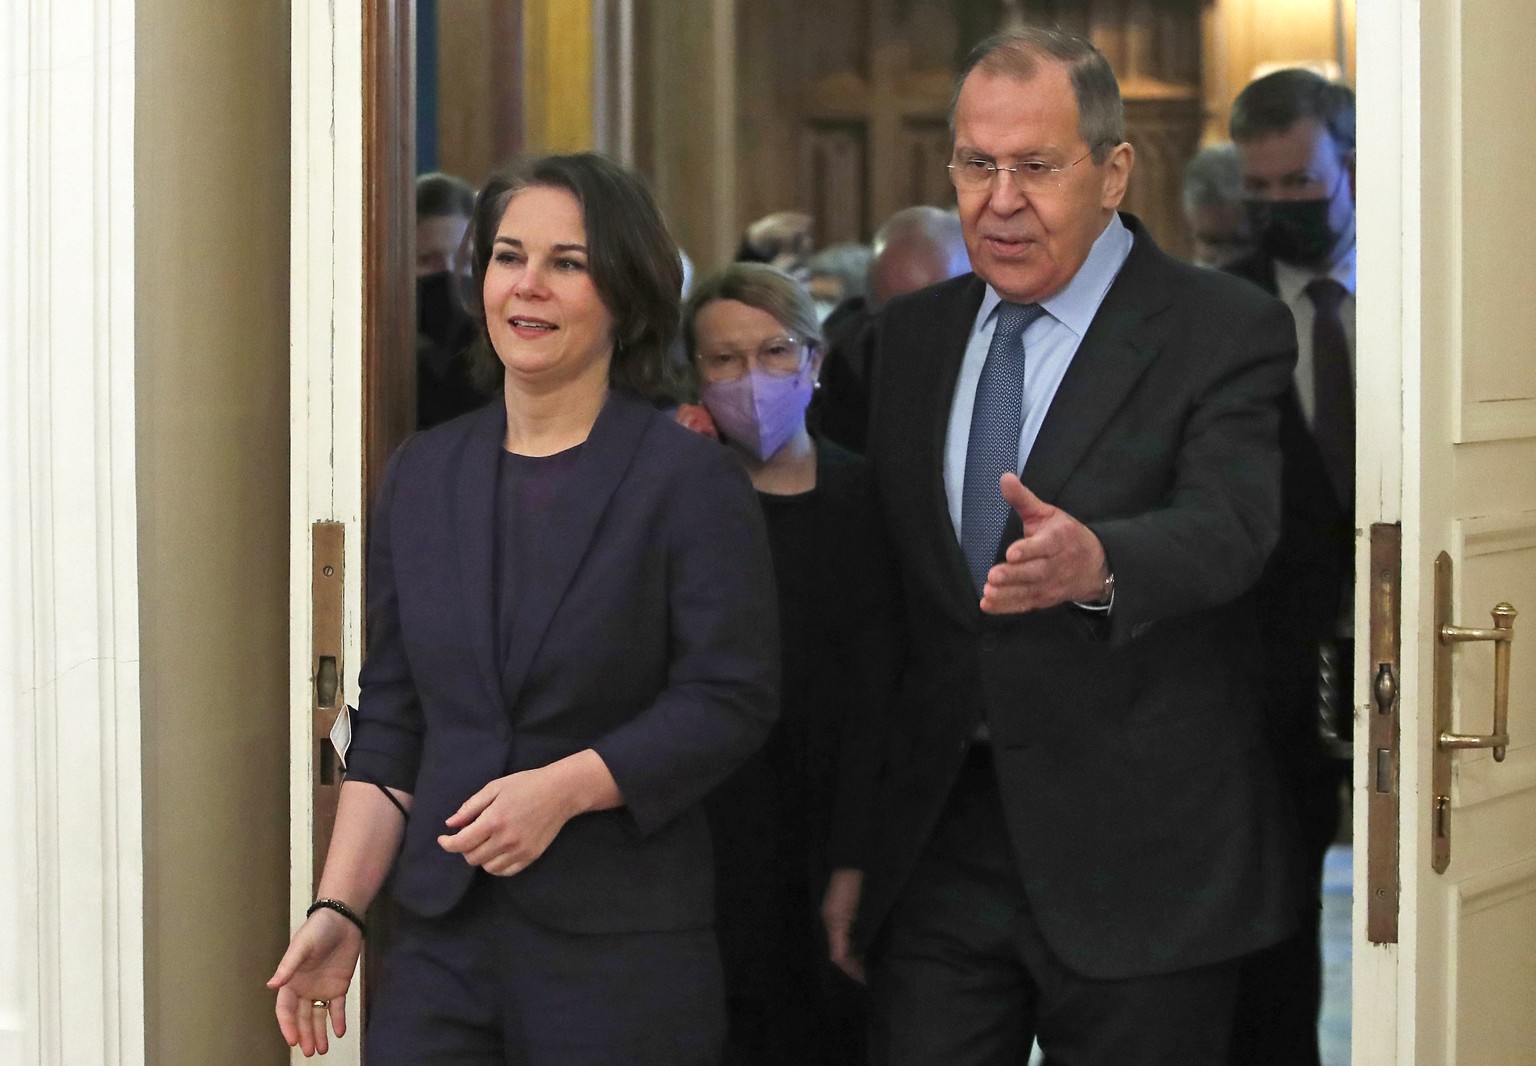 Sergej Lawrow empfängt Annalena Baerbock zum Gespräch in Moskau.